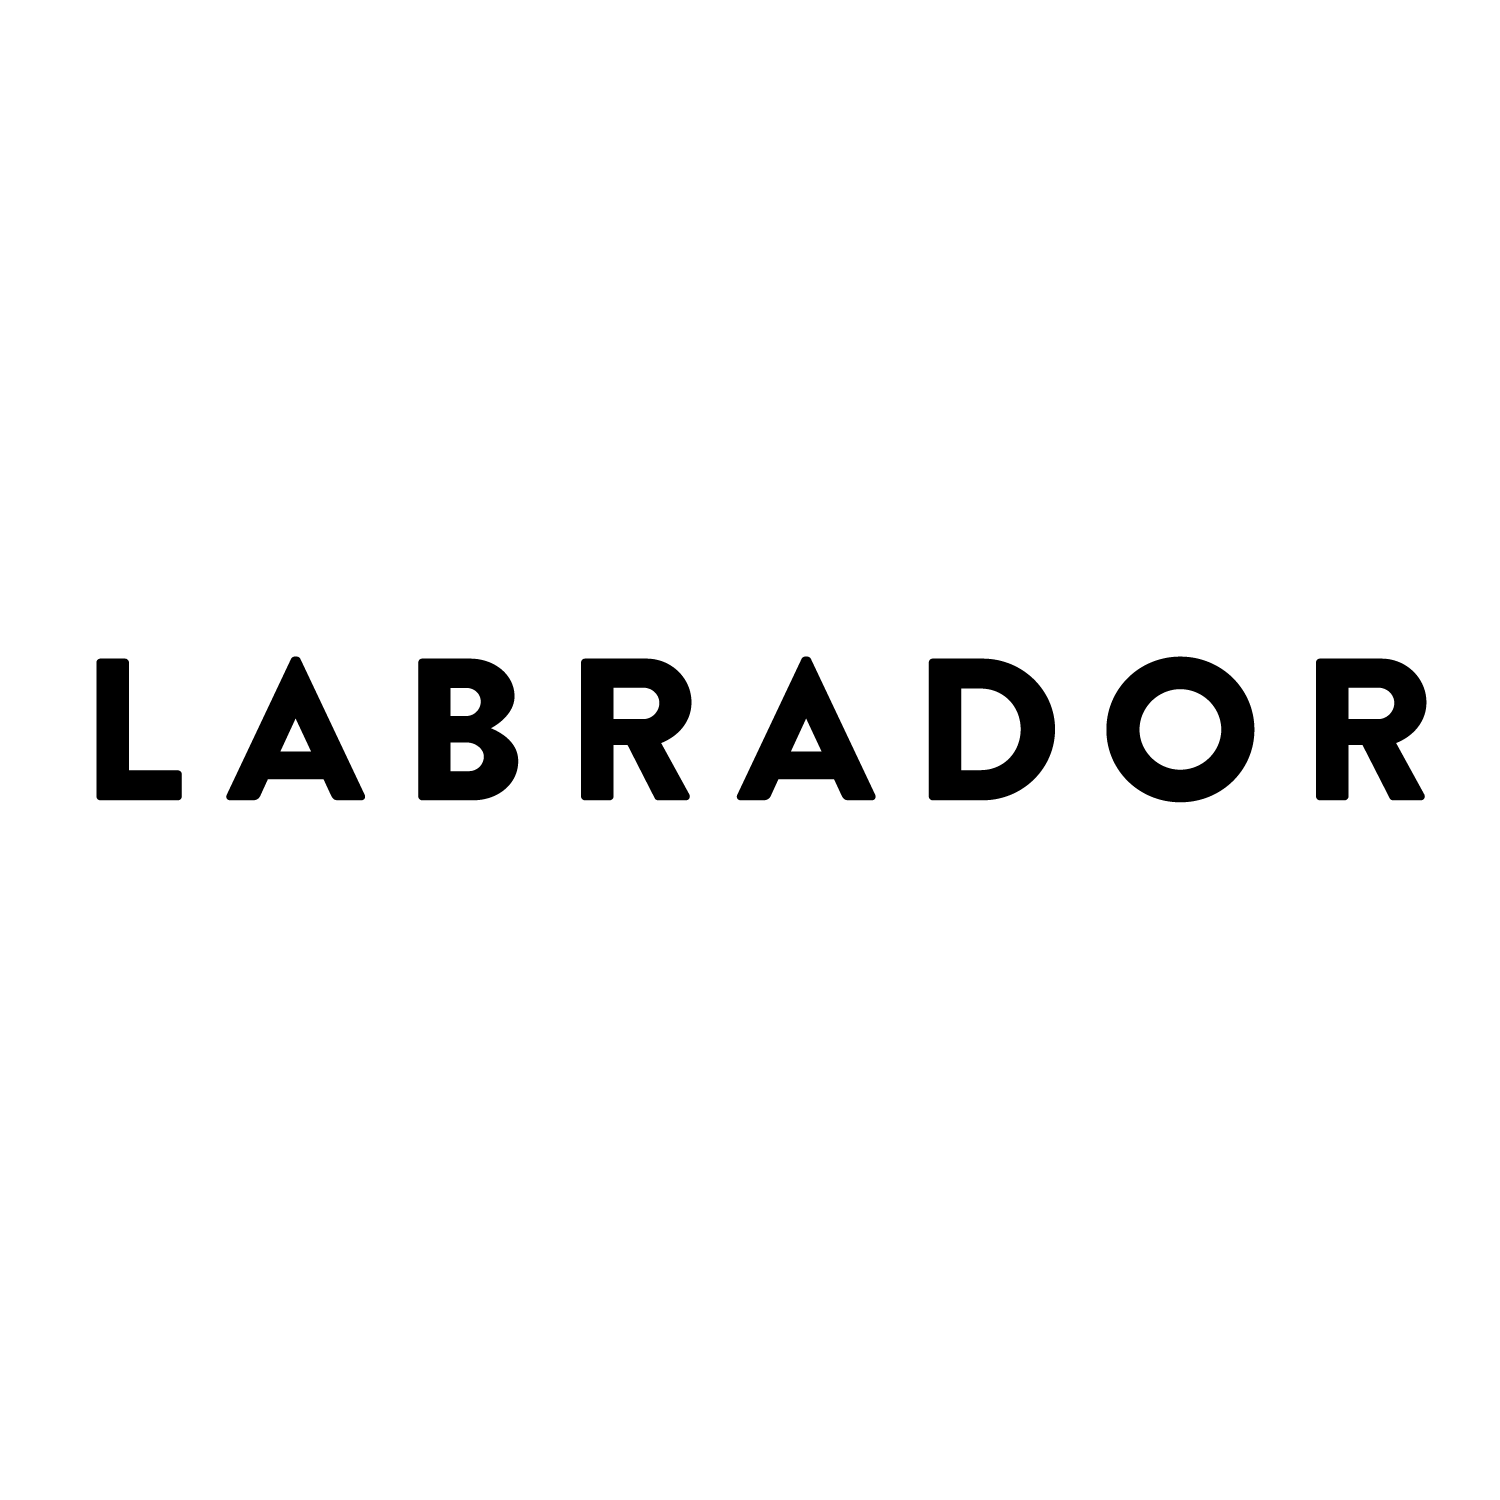 LABRADOR SLEIGHS | Decal